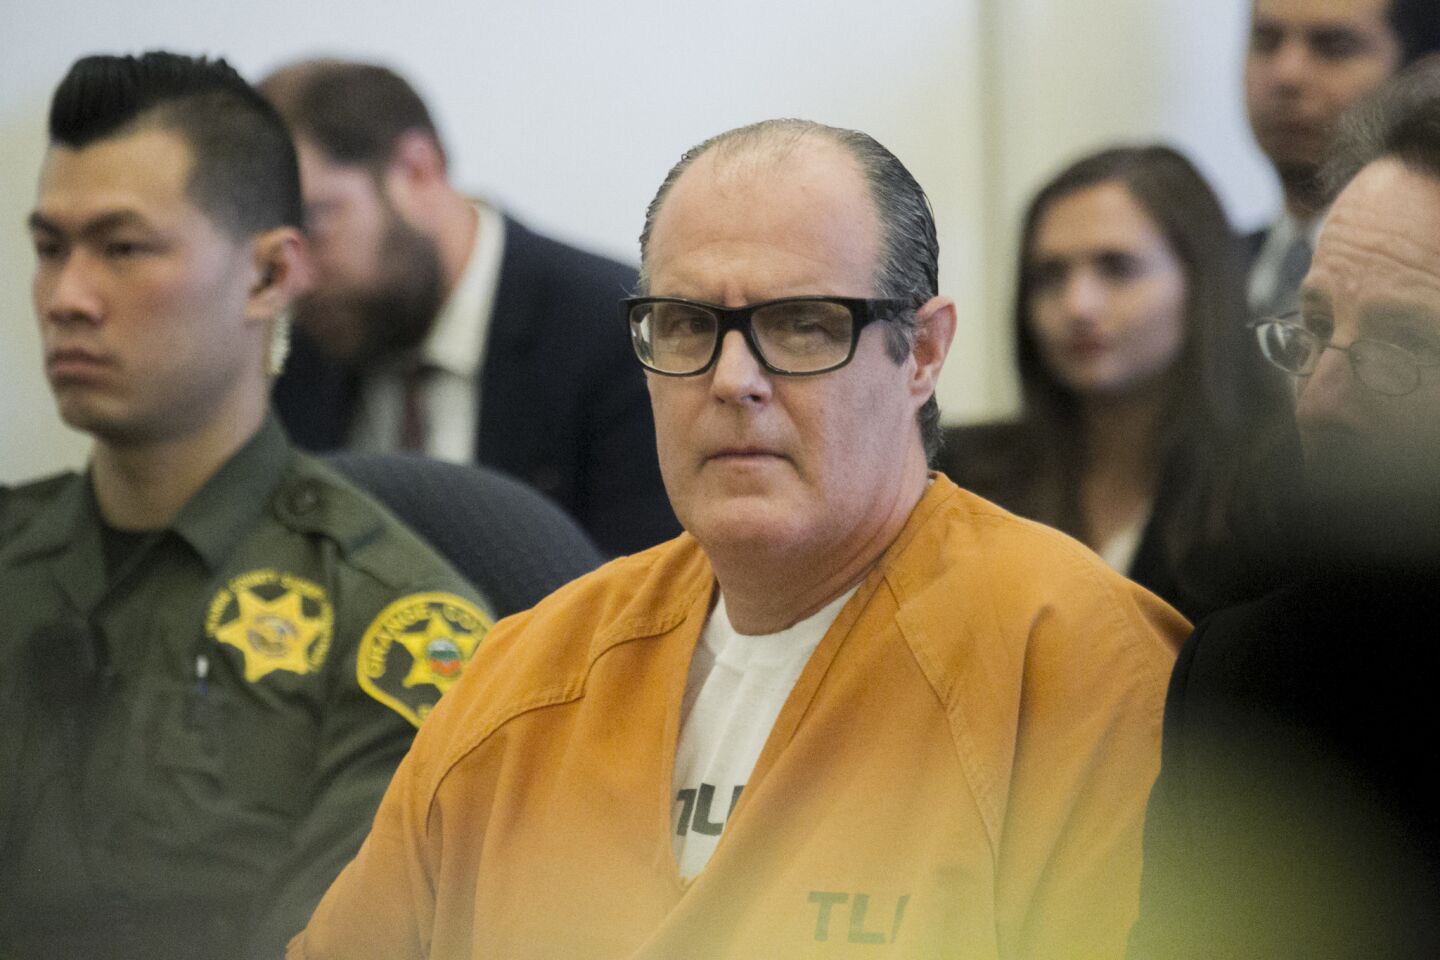 Mass murderer Scott Dekraai sentenced